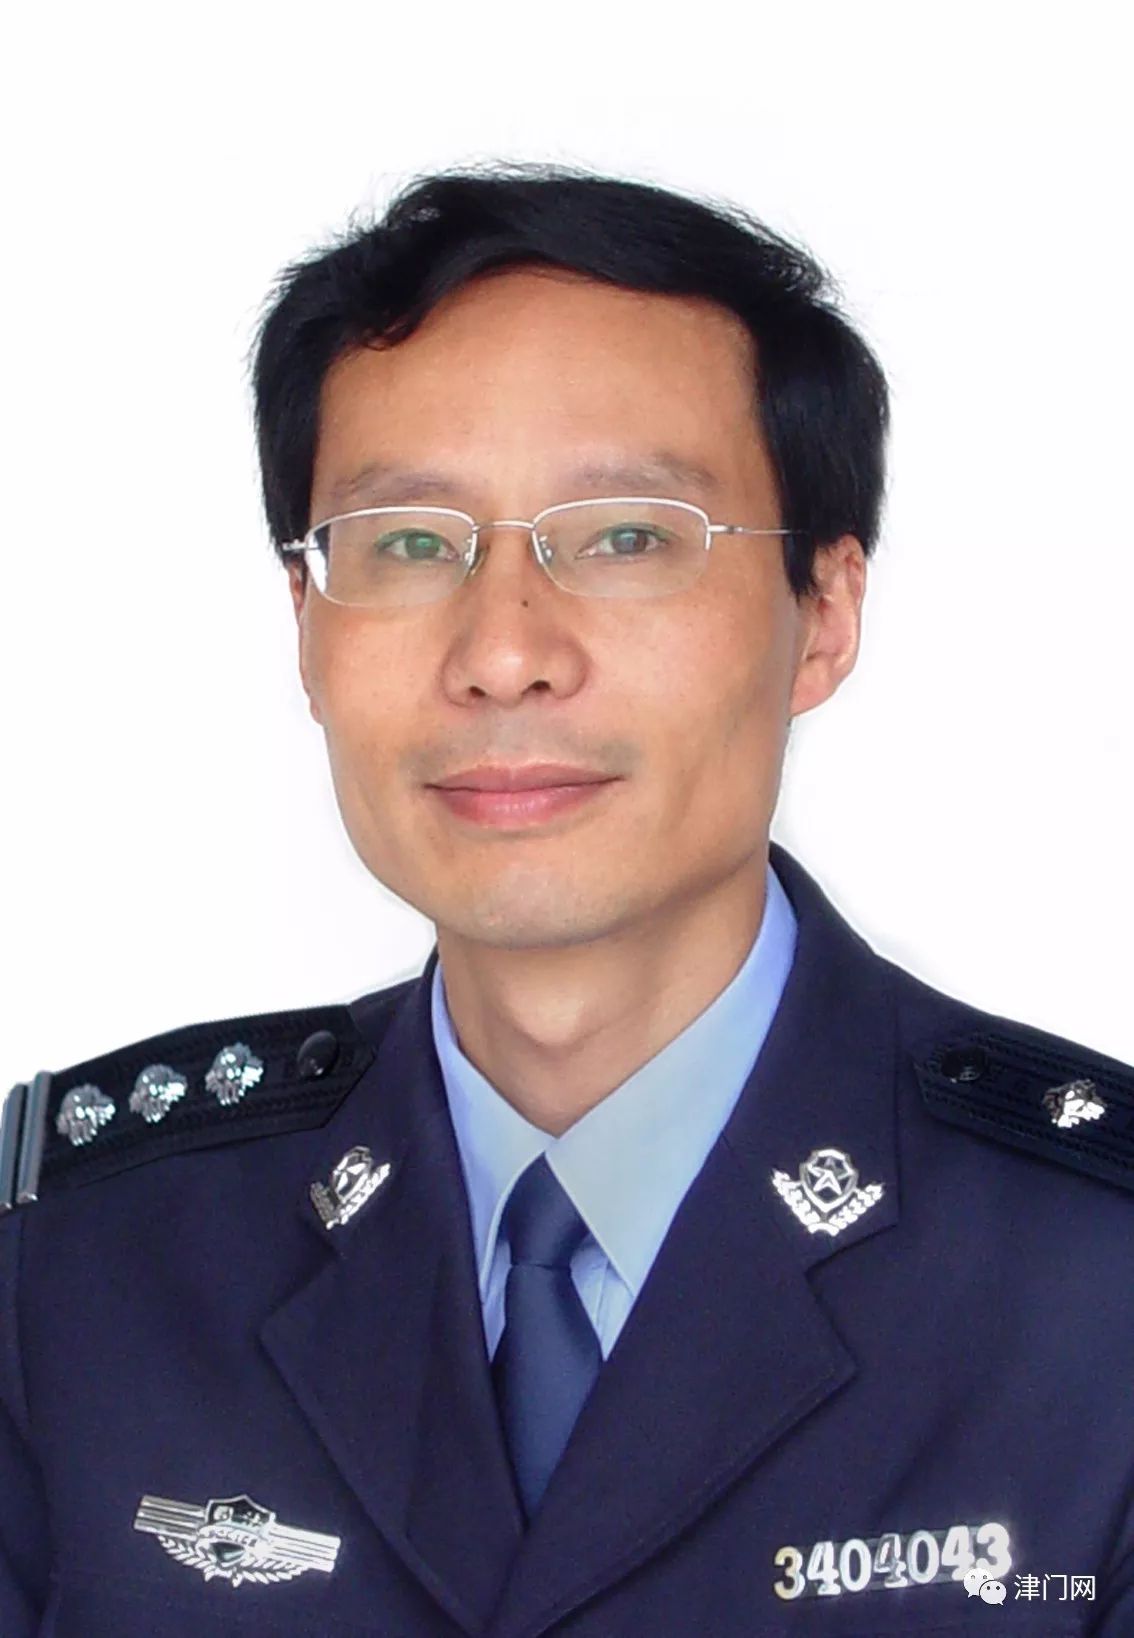 1965年出生,安徽合肥人,中共党员,大学学历,监狱警官(一级警督),中国